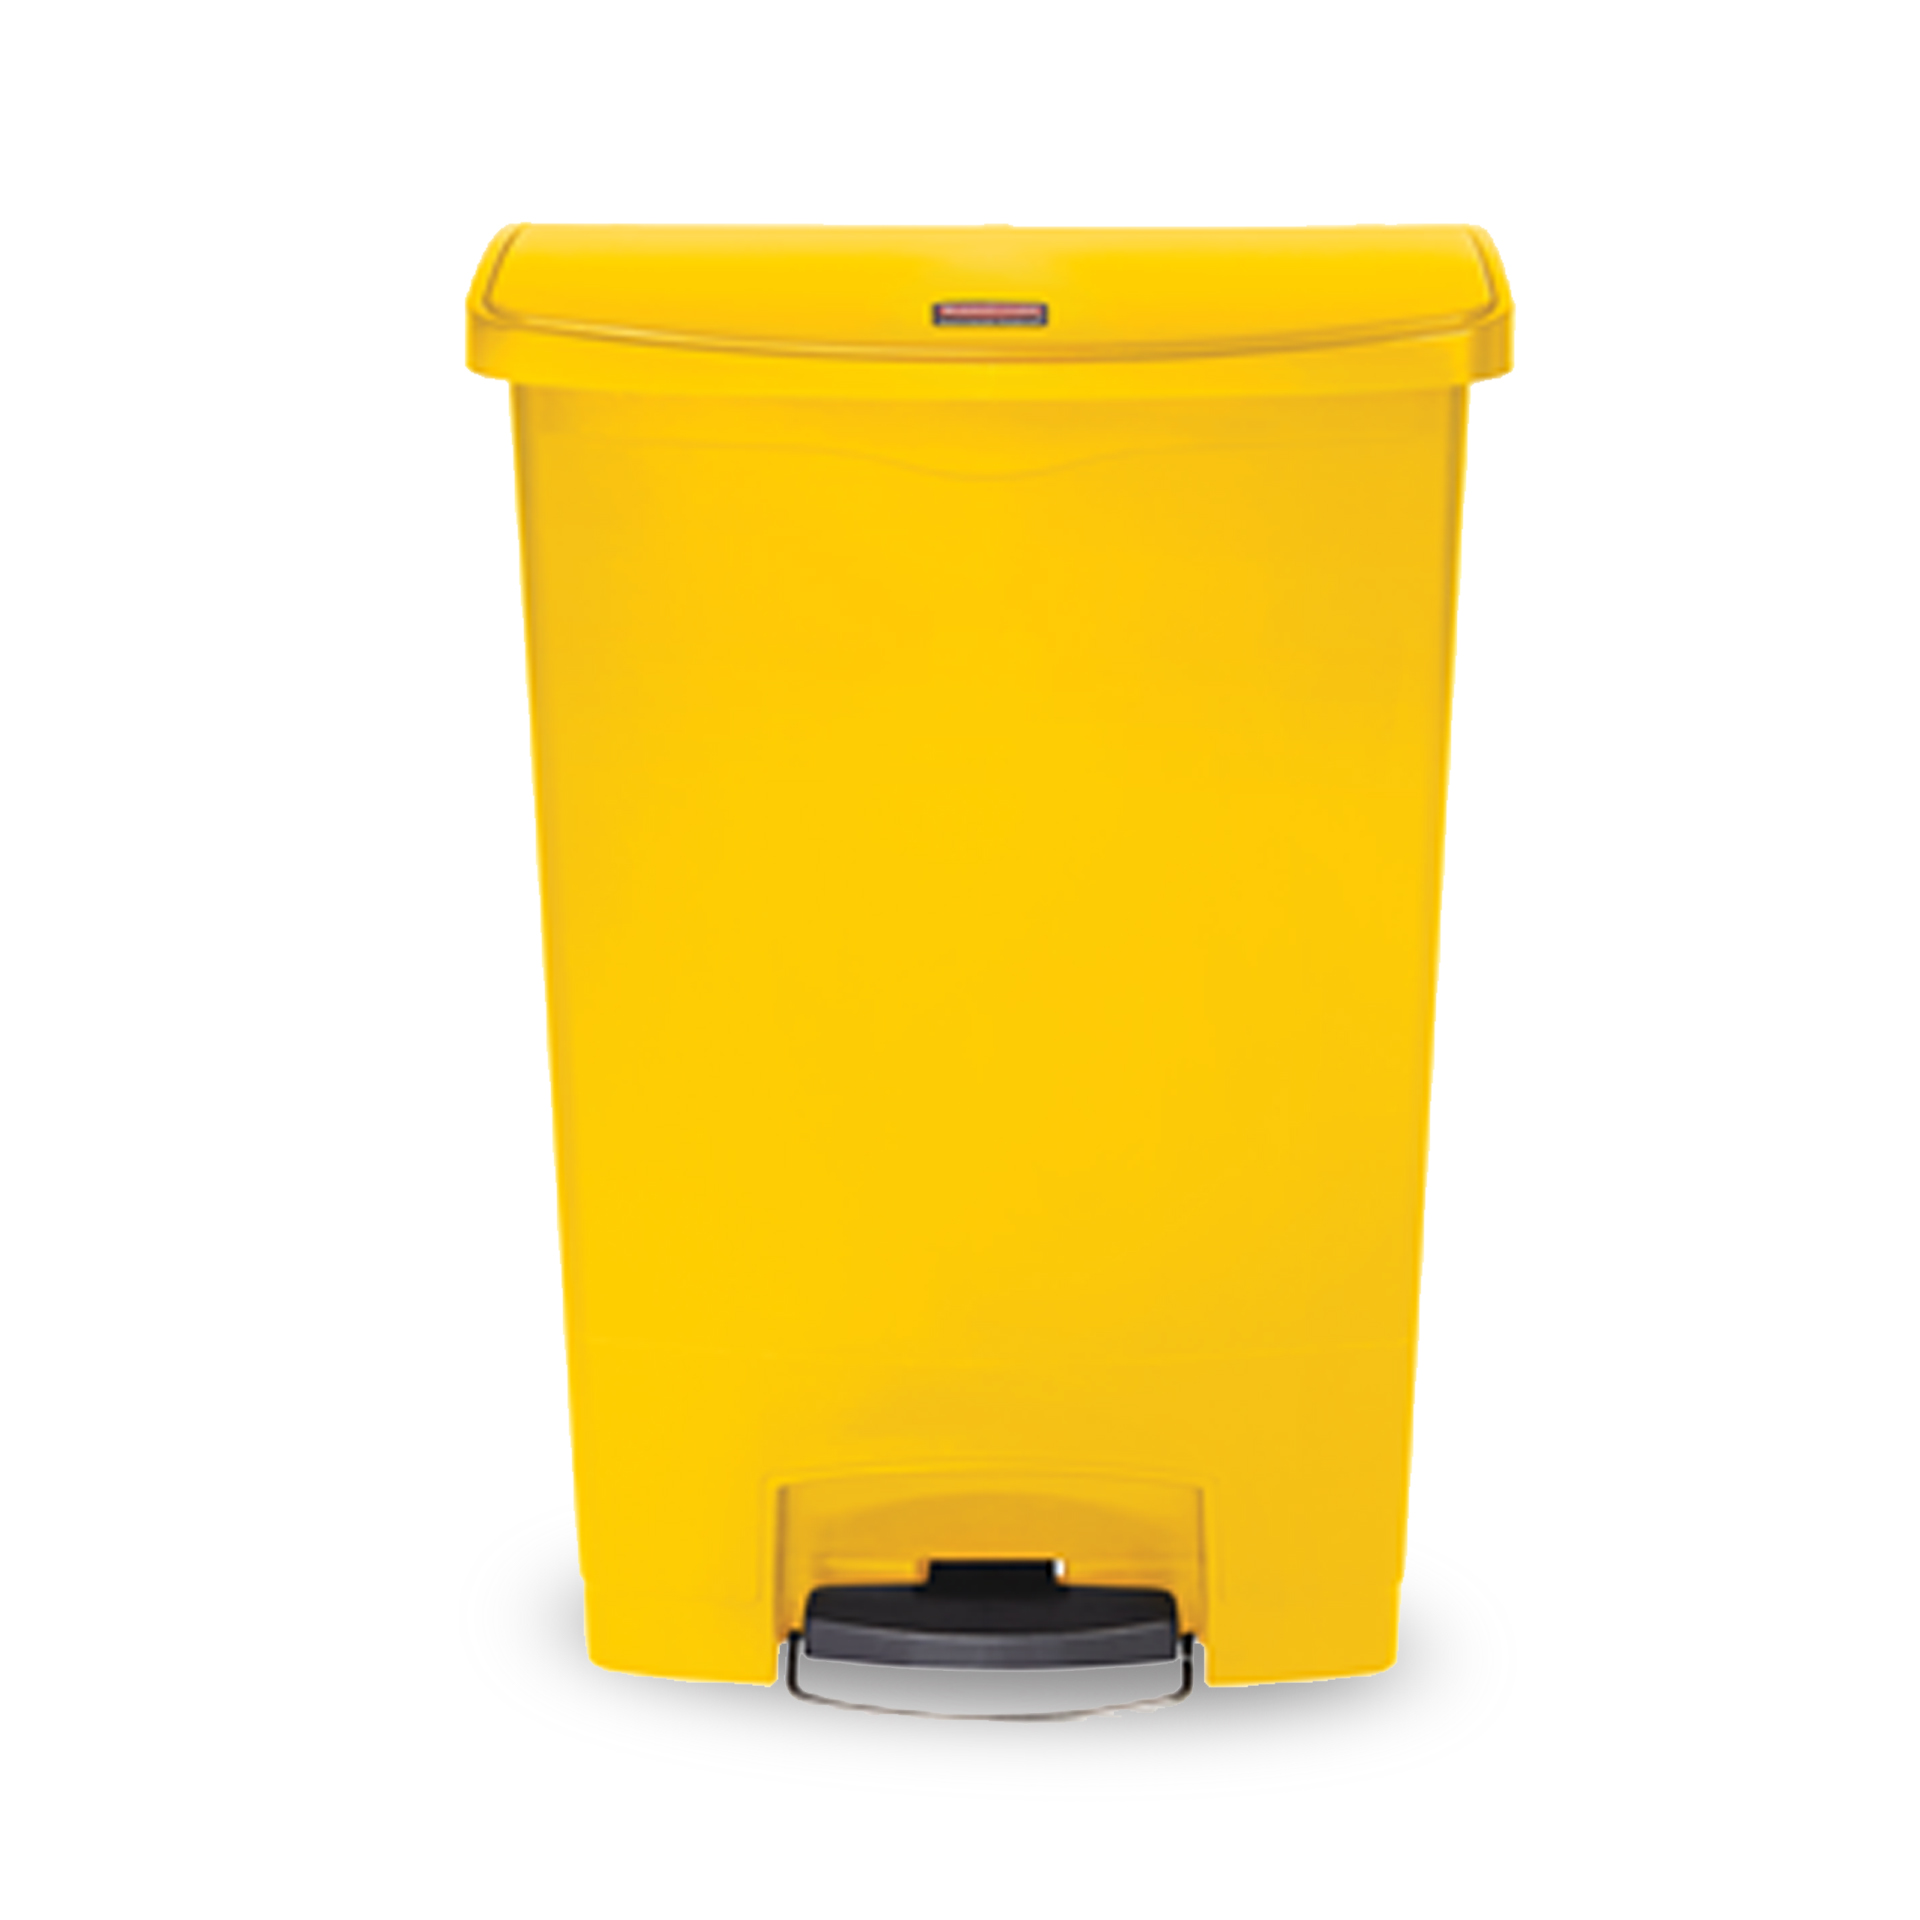 ถังขยะแบบเท้าเหยียบ Slim Jim® Step-On Container ขนาด 50 ลิตร สีเหลือง